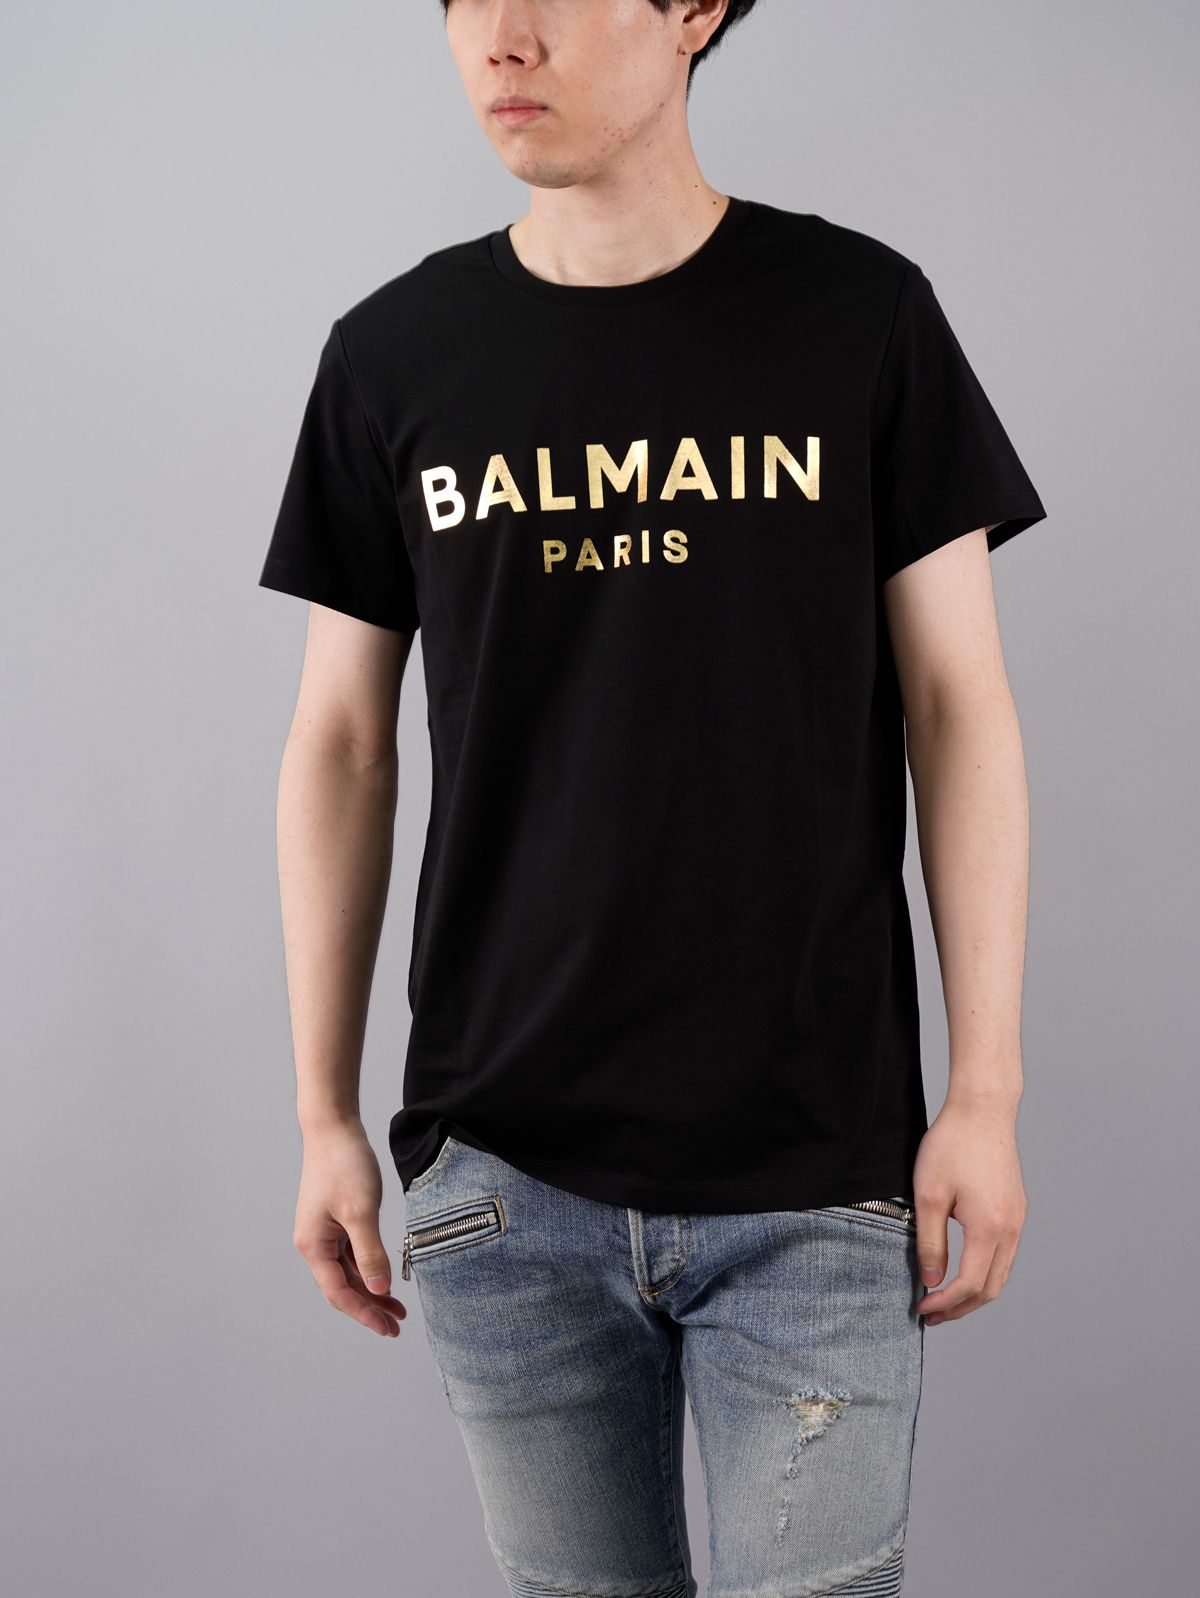 【ラスト1点】Black Cotton T-shirt Gold Balmain Paris Metallic Logo